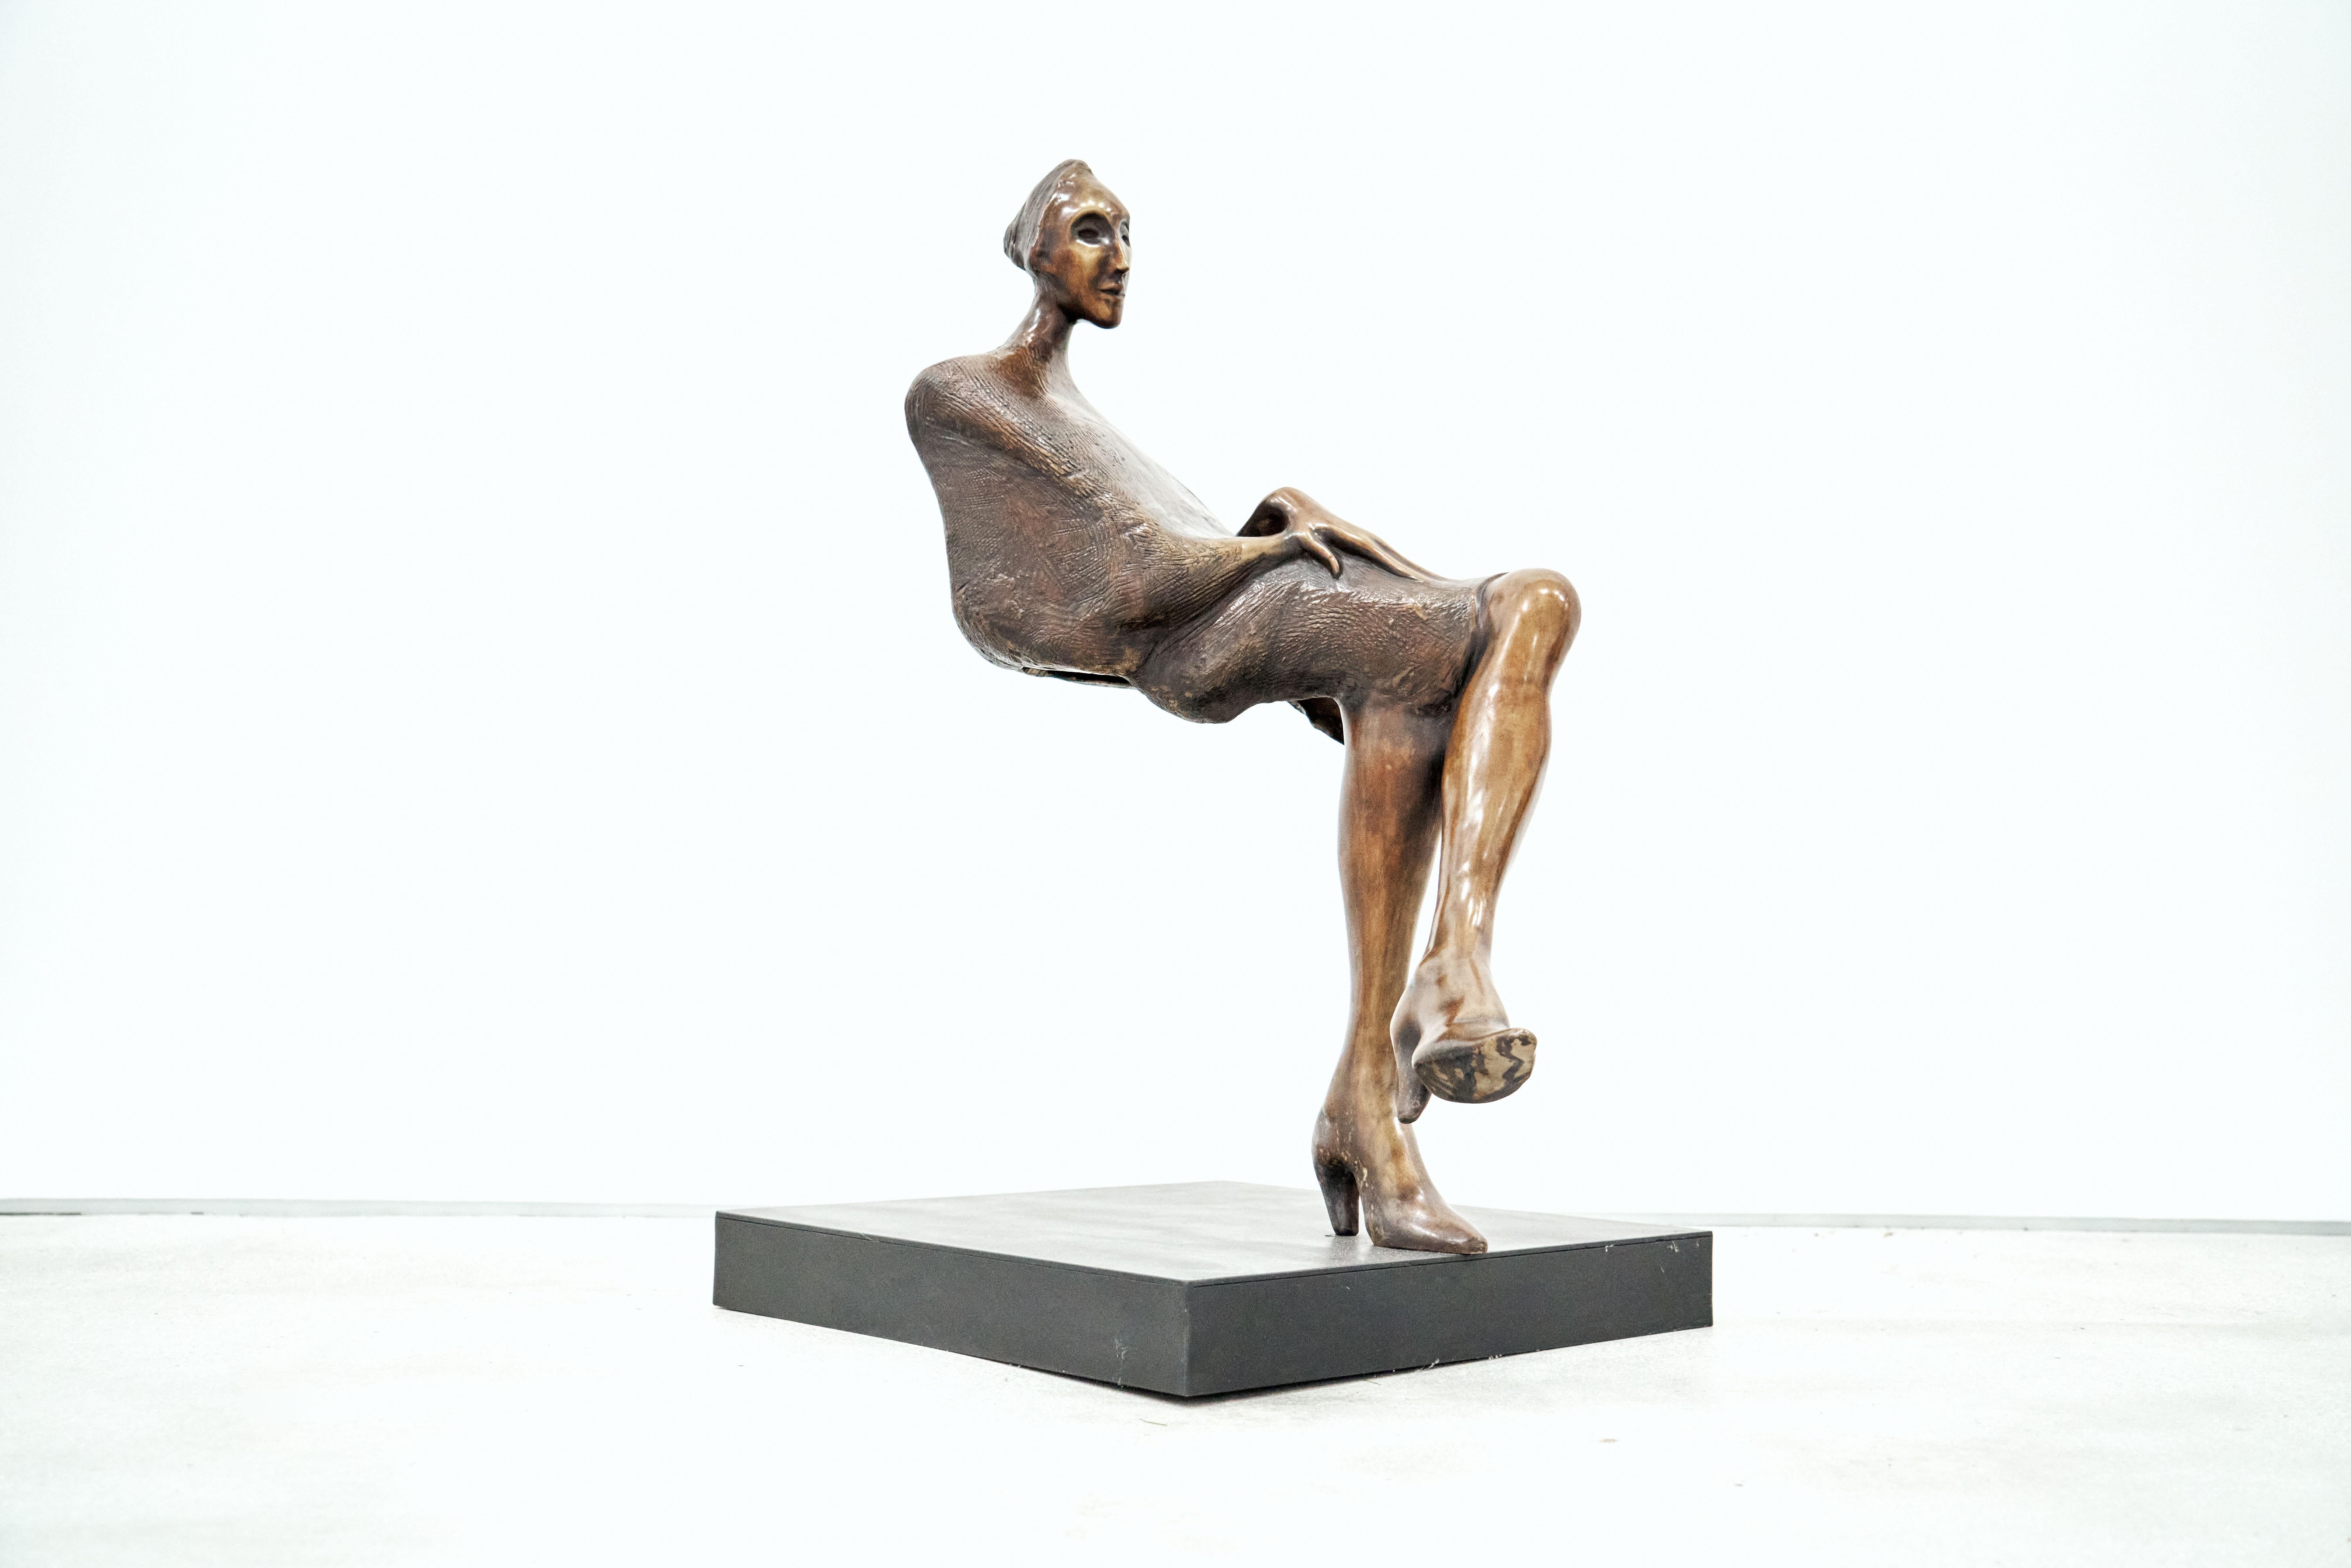  Jorge Segu,  Ilusion silla, 2000, Bronze, Auflage von 7, 78 x 90 x 33 cm  – Sculpture von Jorge Seguí 